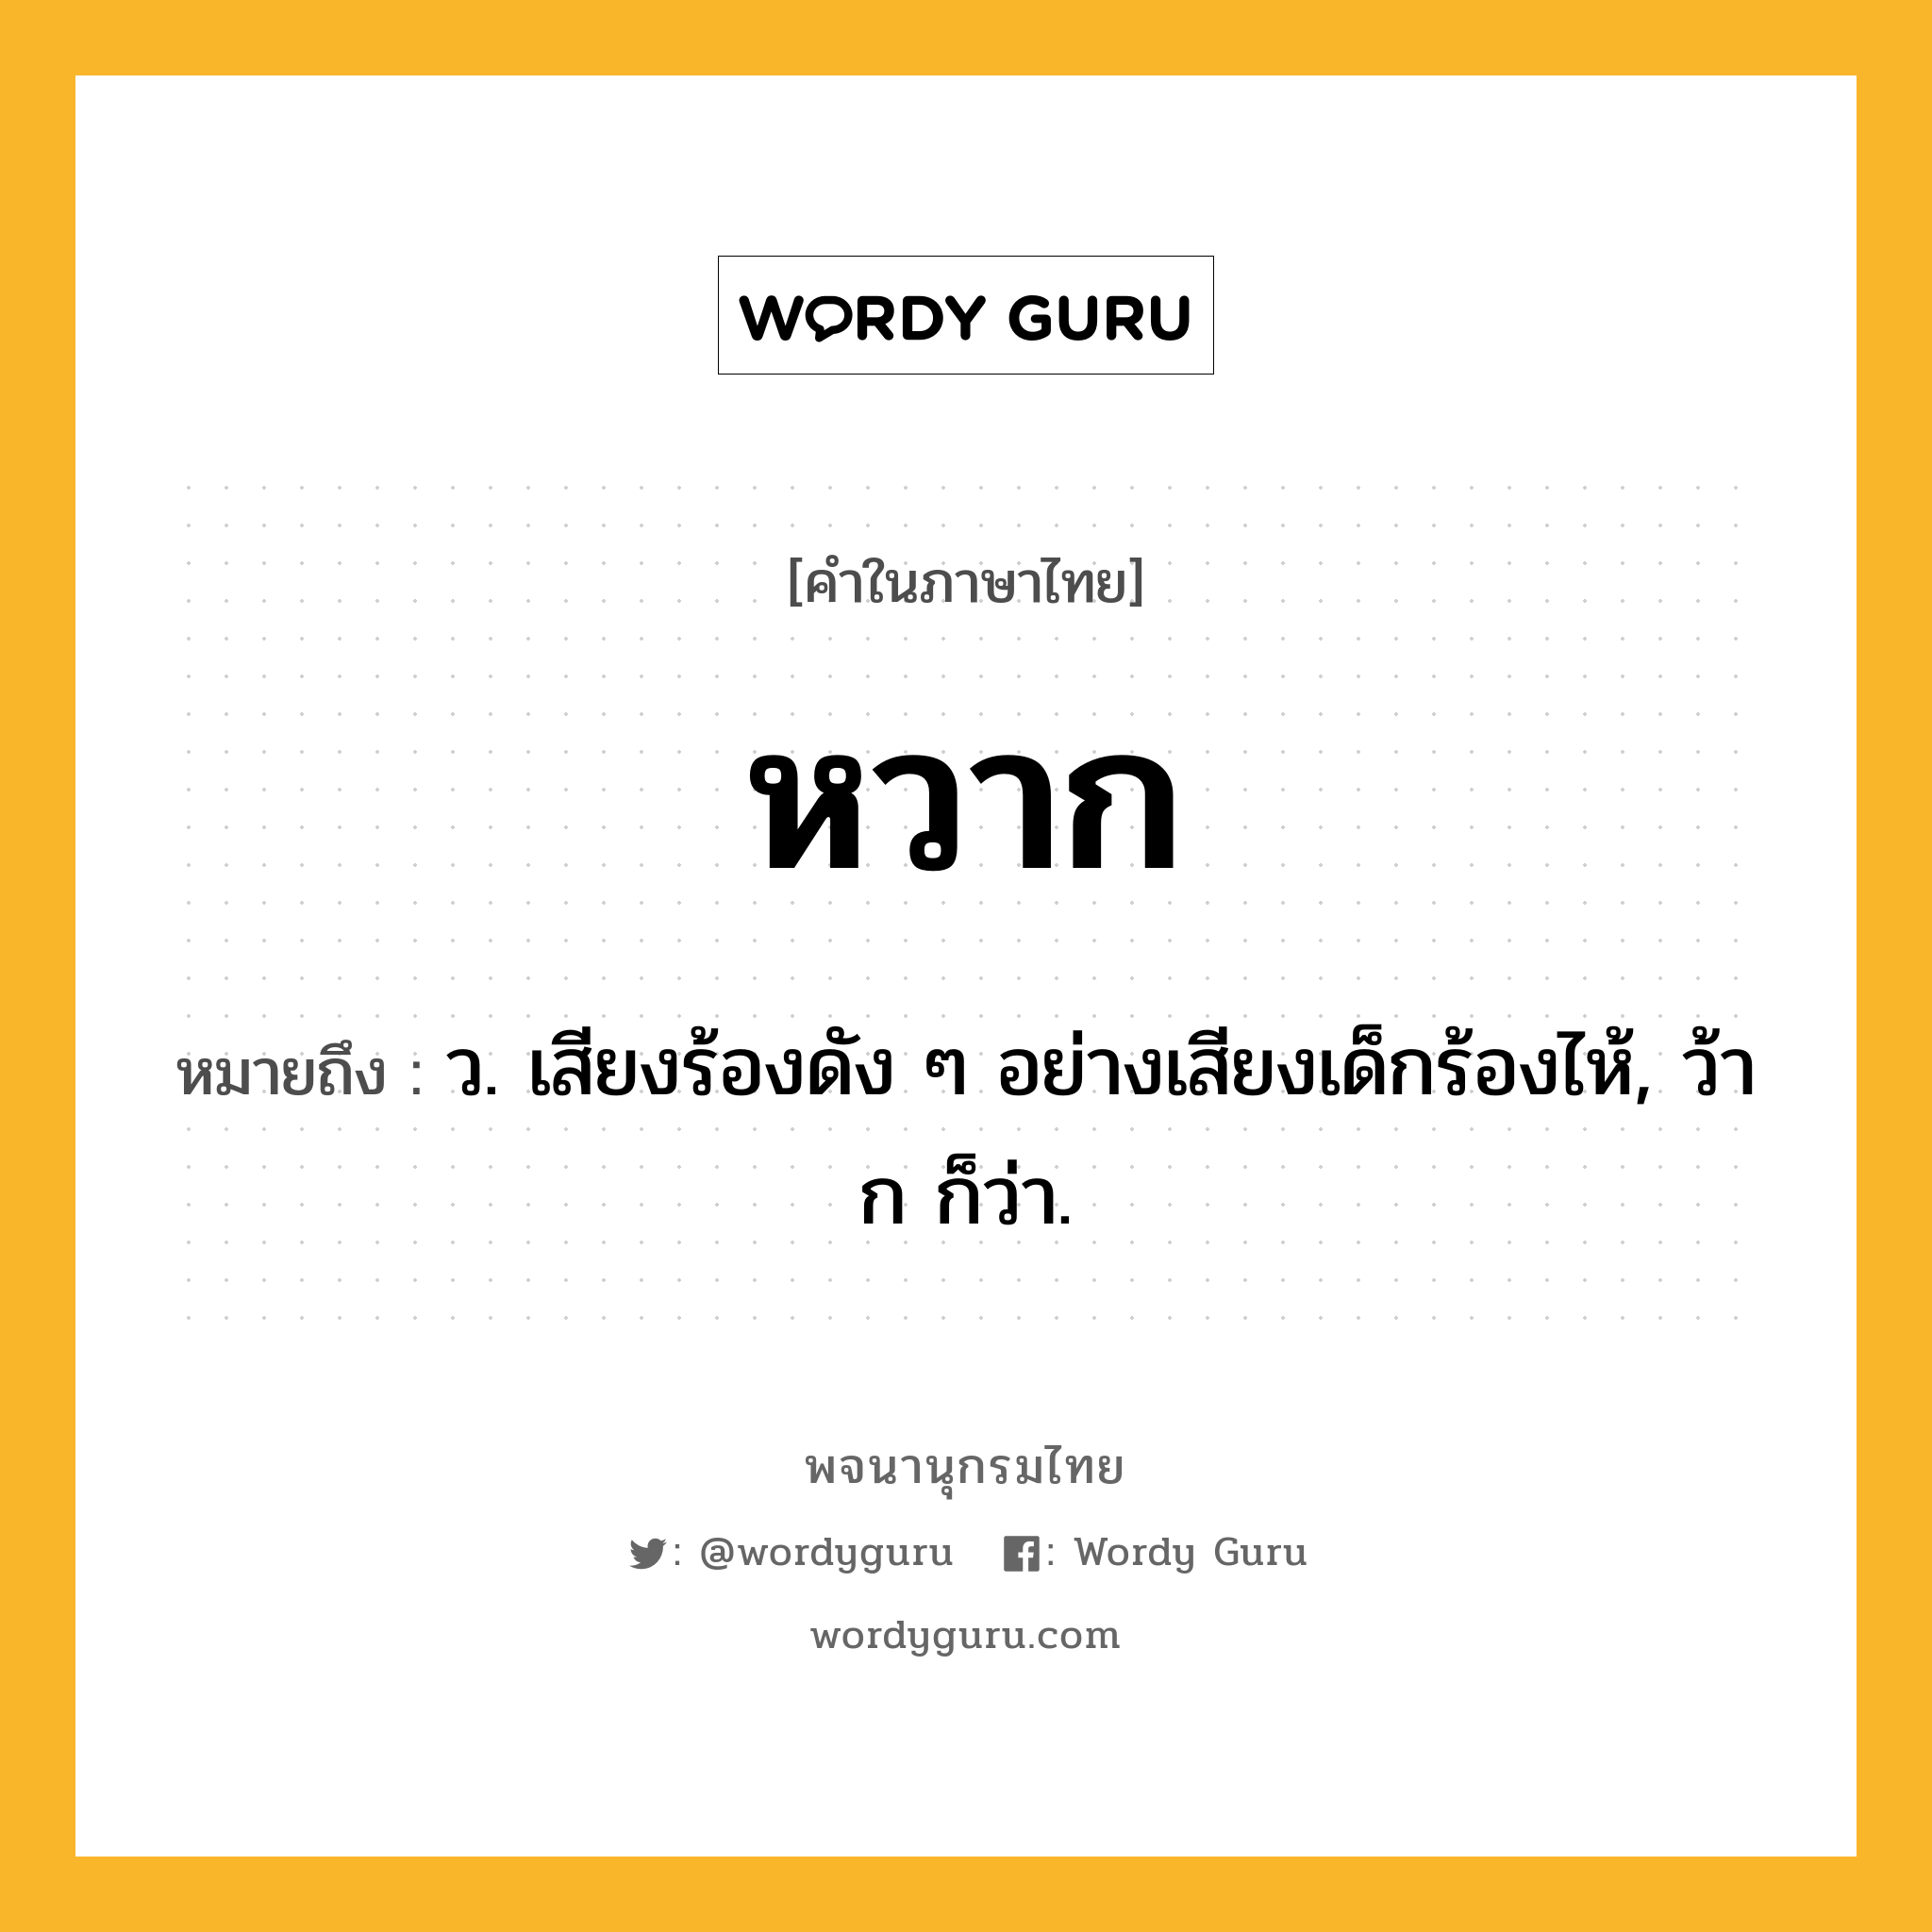 หวาก หมายถึงอะไร?, คำในภาษาไทย หวาก หมายถึง ว. เสียงร้องดัง ๆ อย่างเสียงเด็กร้องไห้, ว้าก ก็ว่า.